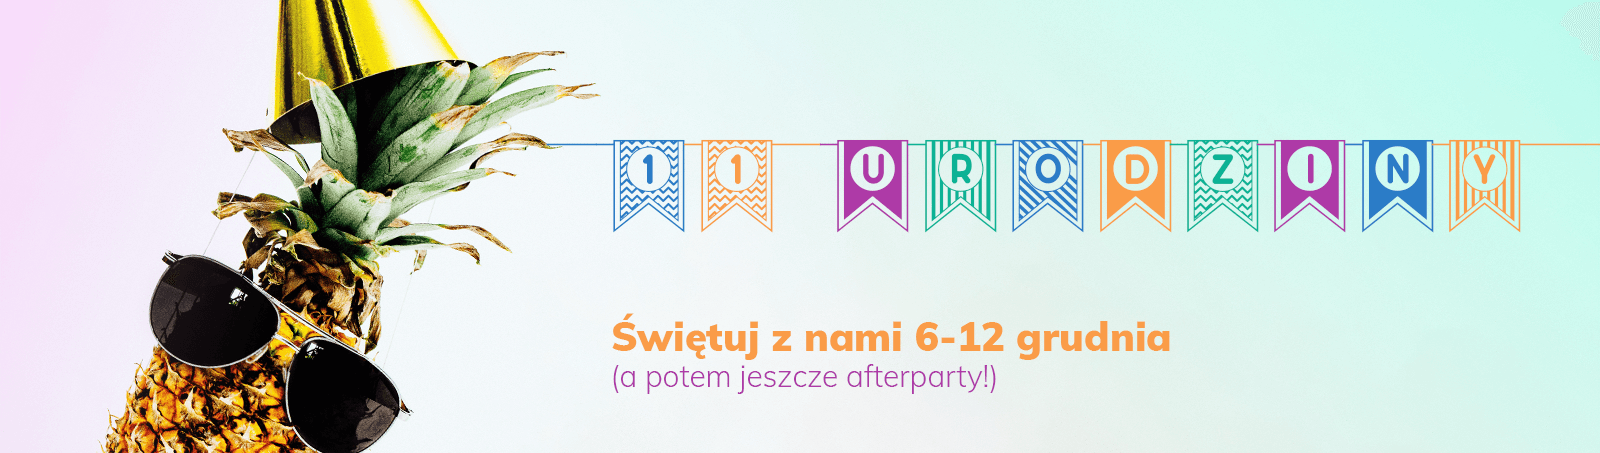 11. urodziny Woblinka - Świętuj z nami 6-12 grudnia (a potem jeszcze afterparty!)